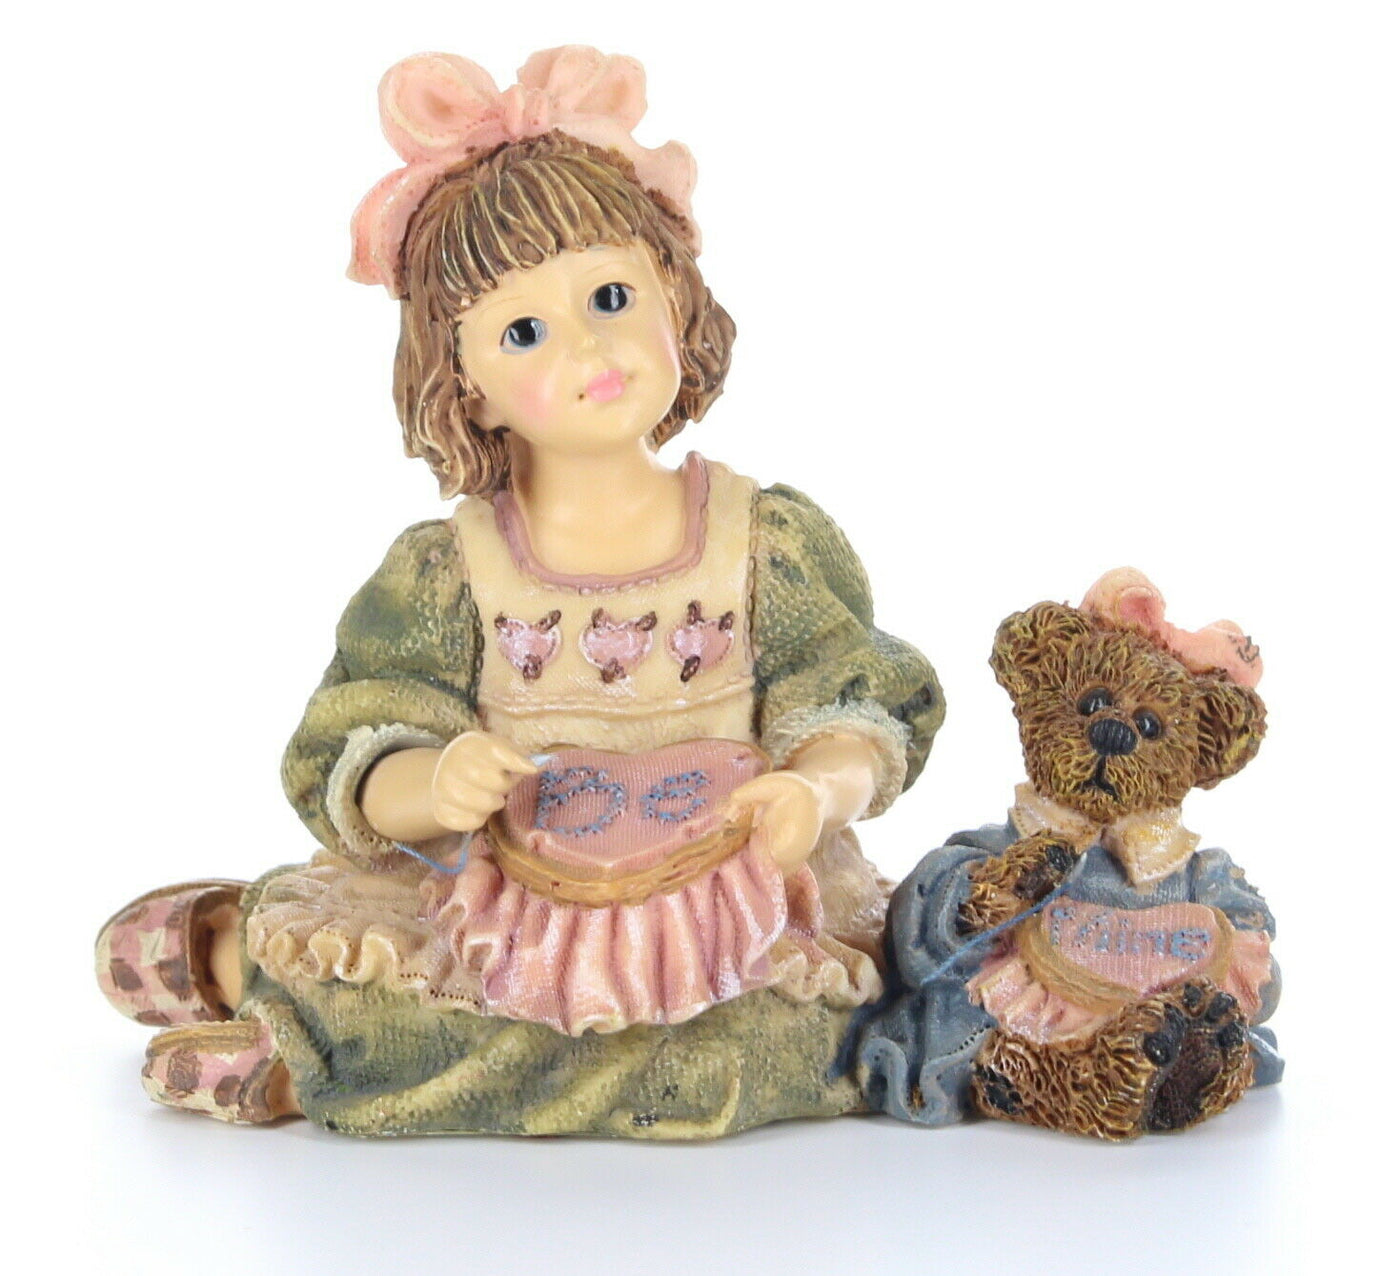 Boyds Bears Dollstone Figurine Alyssia w/ Caroline A Stitch in Time #3539 No Box